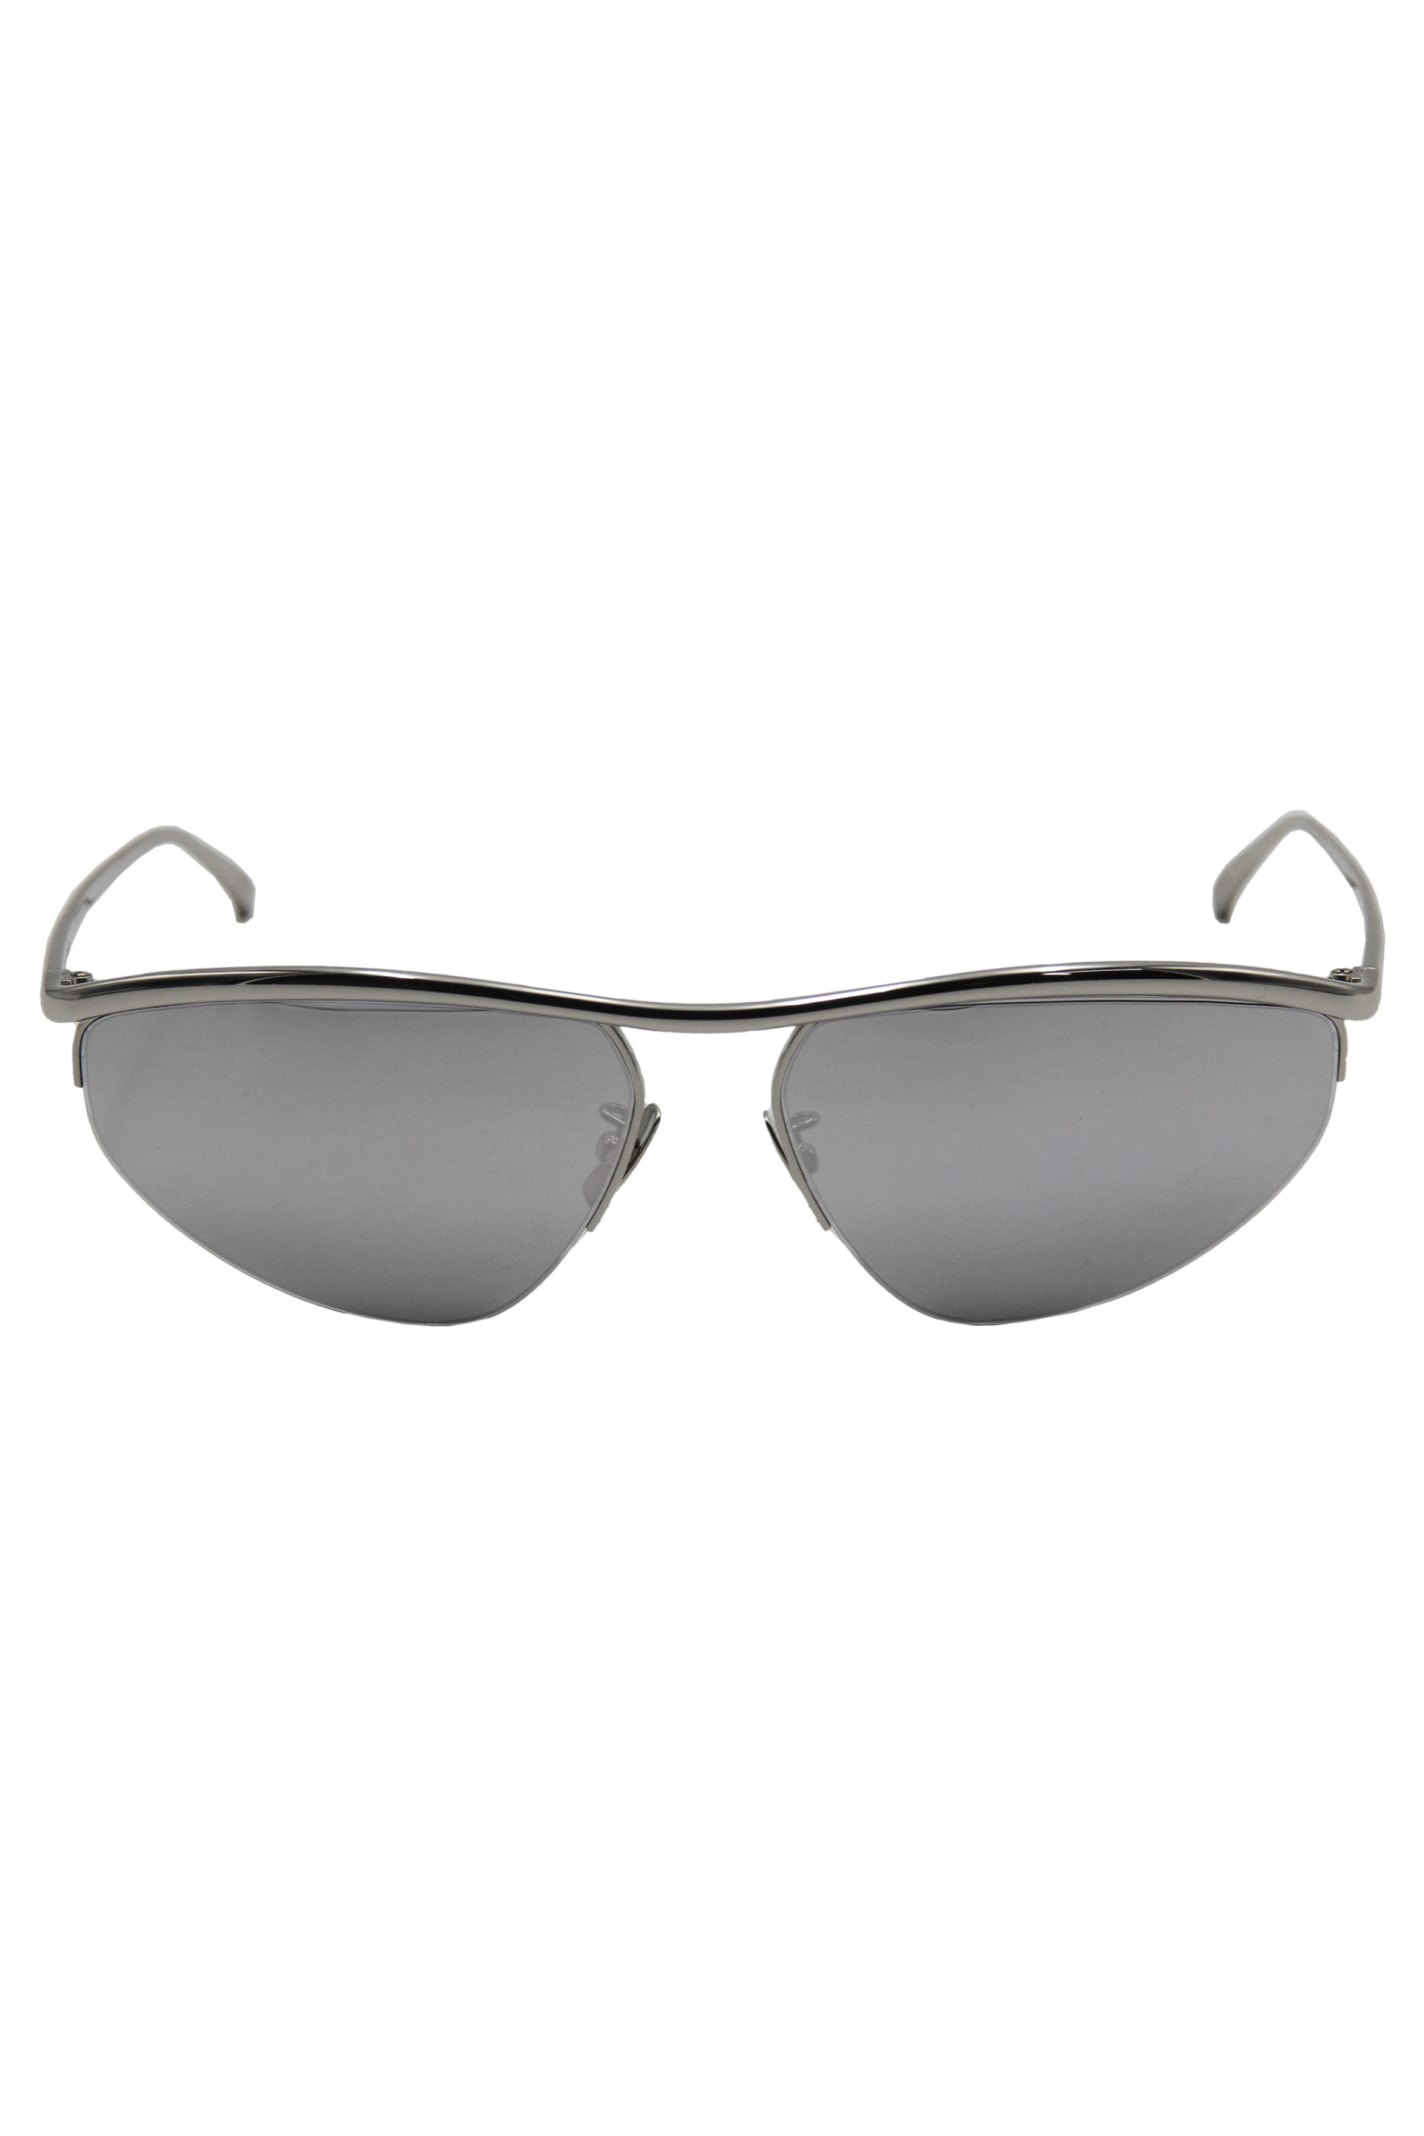 Bottega Veneta Half Frame Sunglasses In Silver